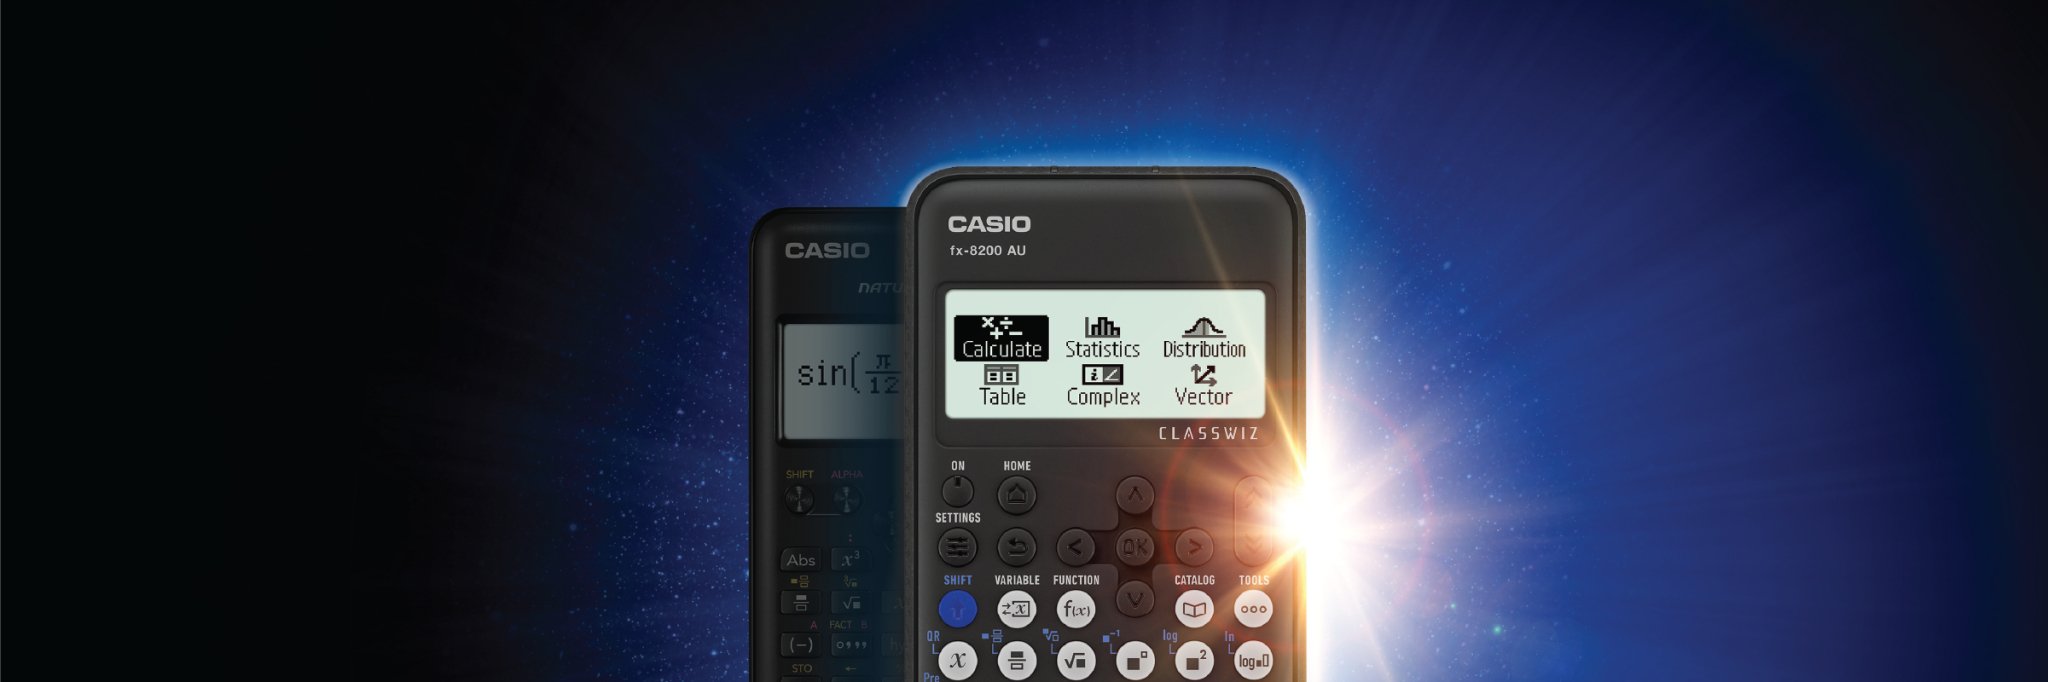 Casio Calculators - CASIO Australia